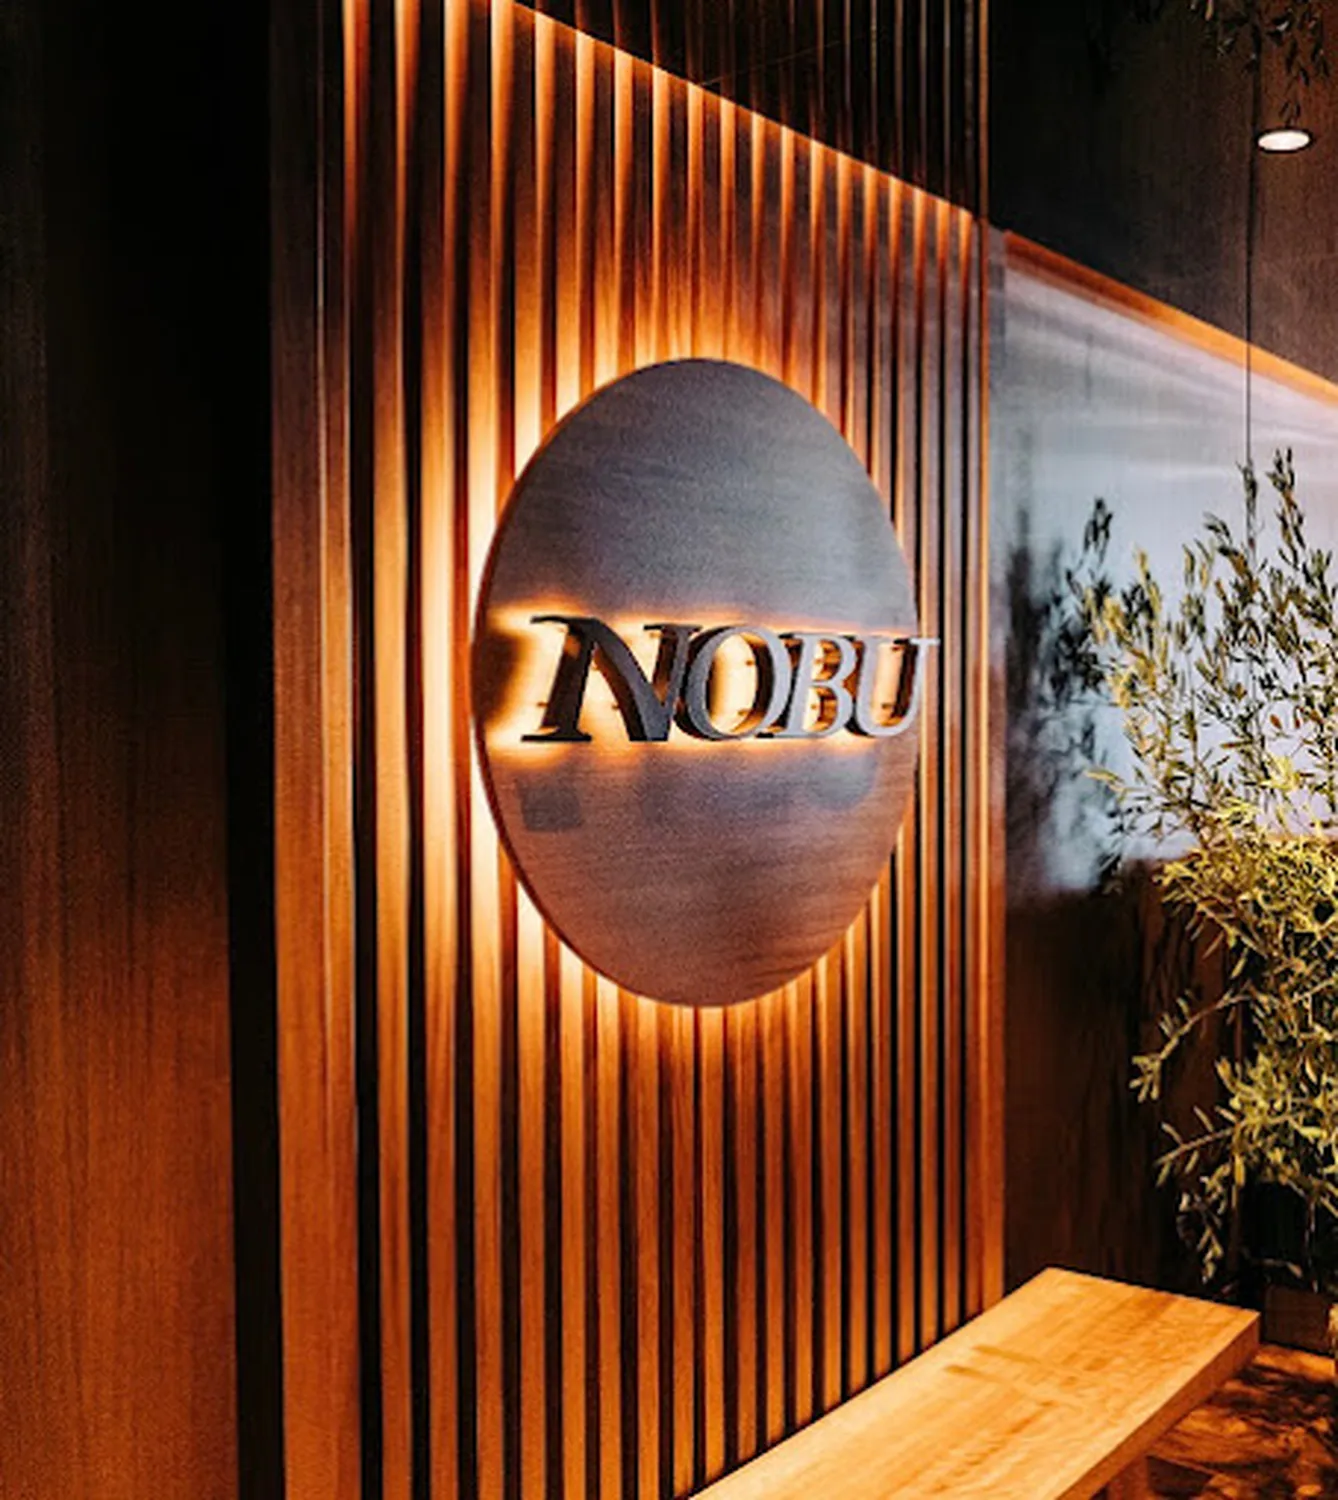 Nobu restaurant Istanbul